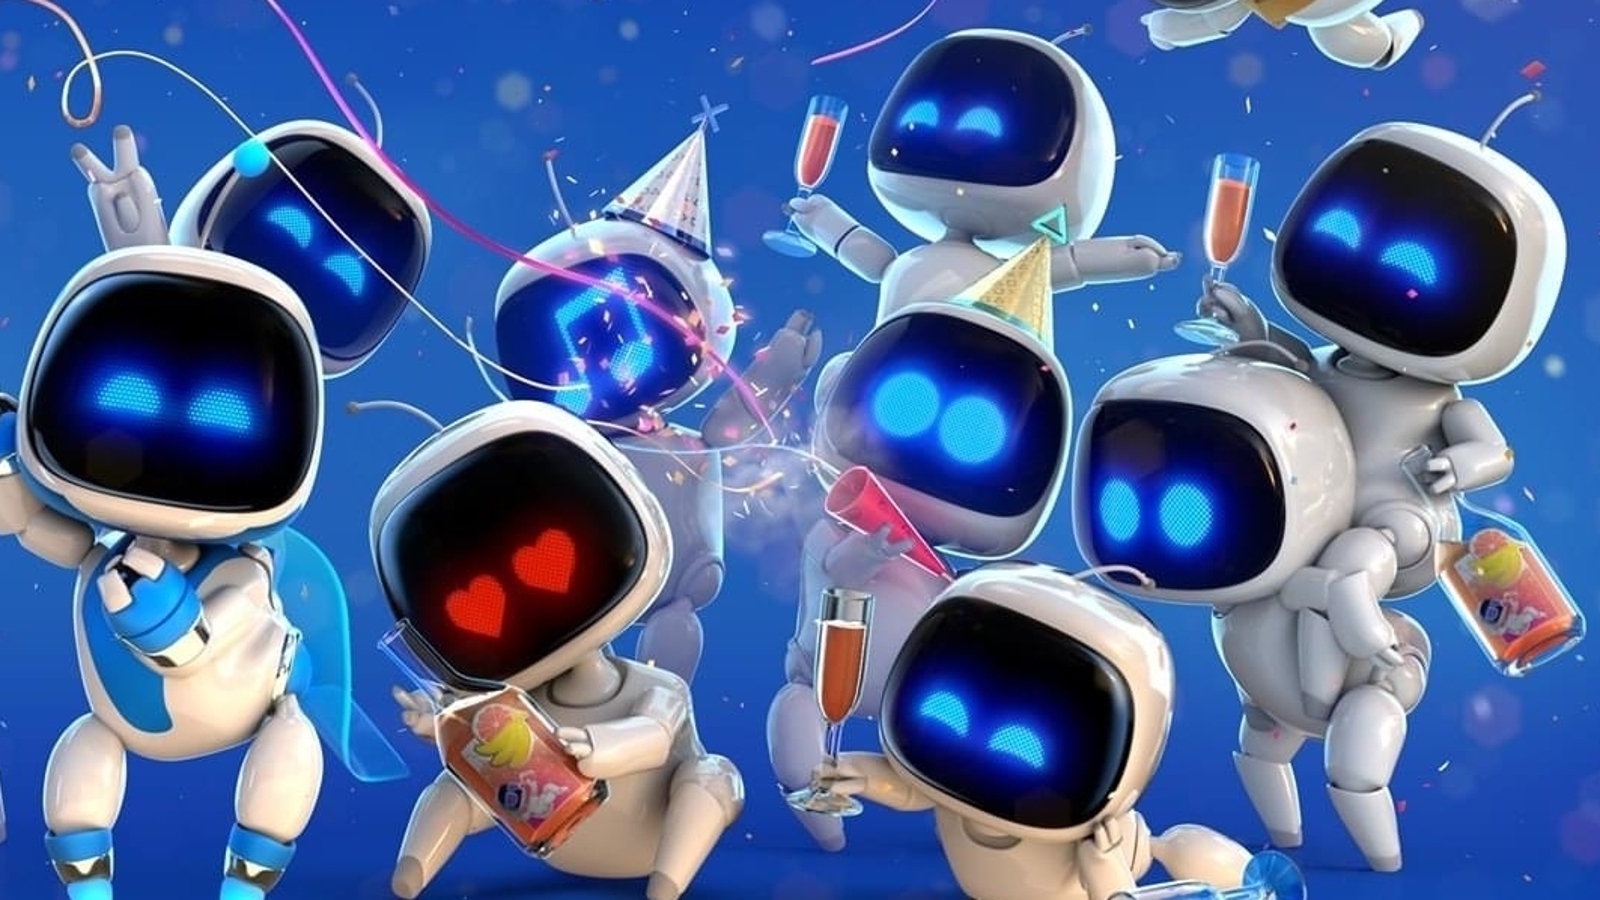 Un gruppo di Astro Bot che festeggian con stelle filanti e bicchieri